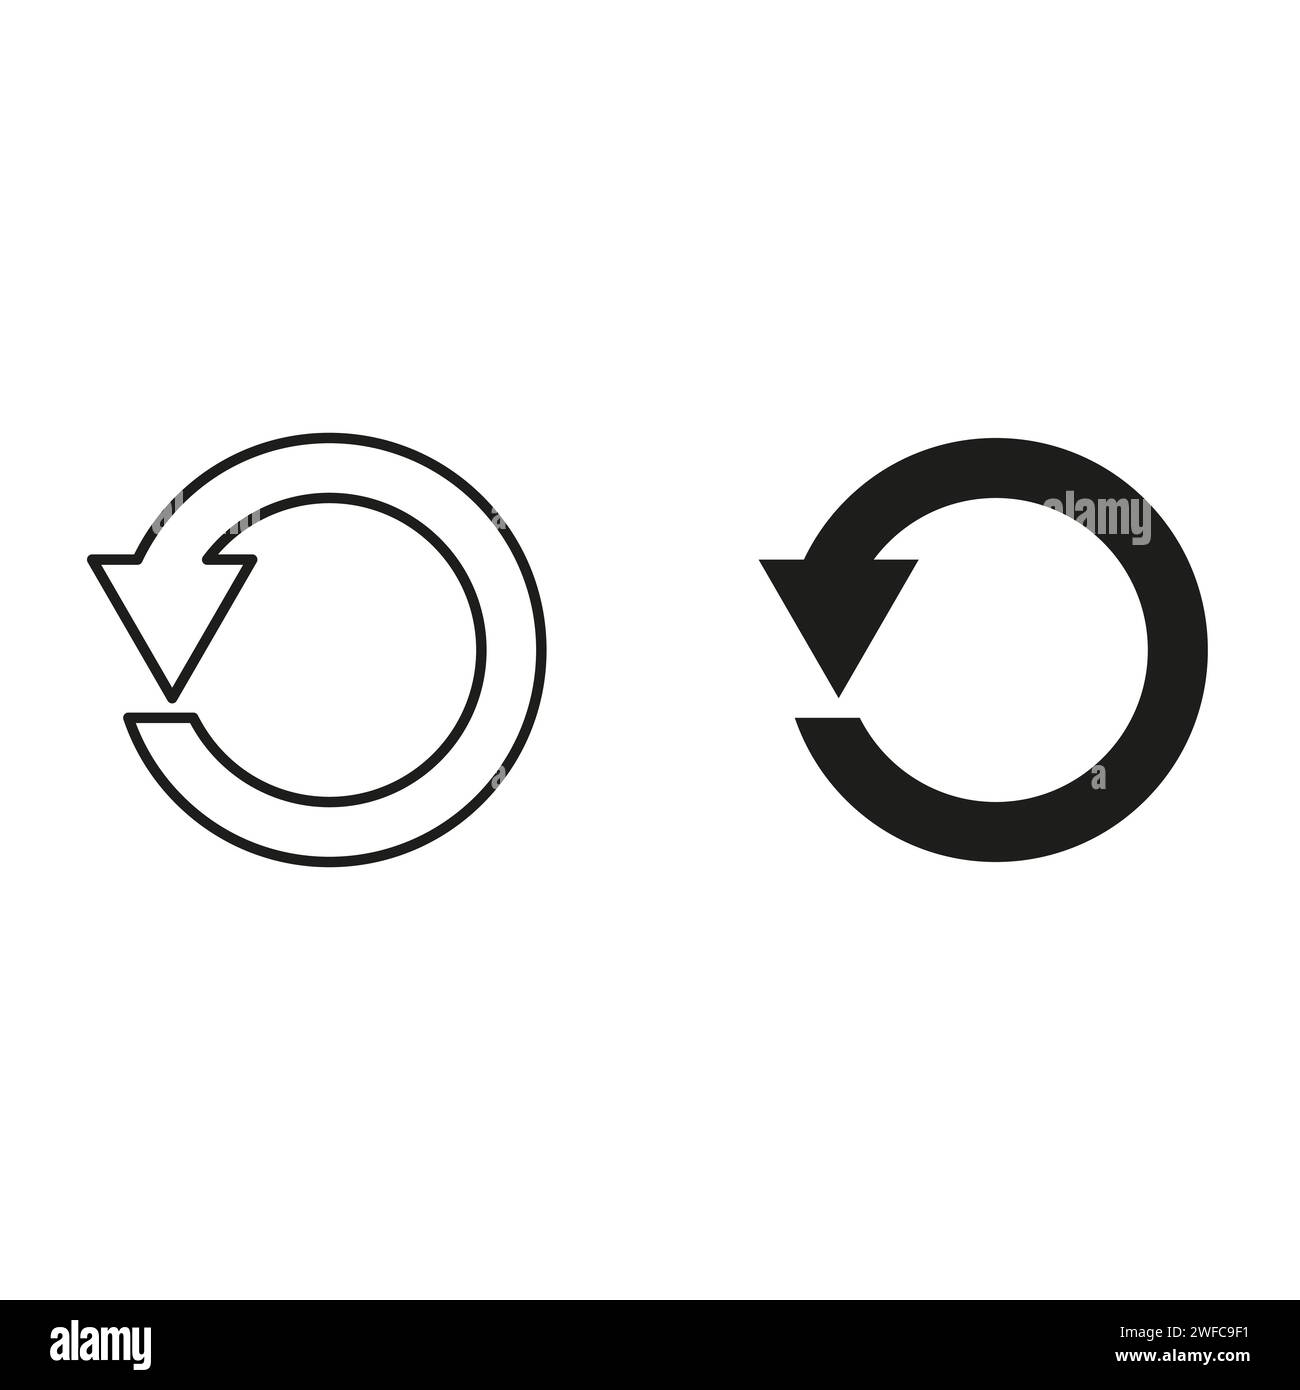 Kreisförmiger Pfeil. Zurück-Symbol. Kontur und schwarzes Zeichen. Flachbild. Einfaches Design. Vektorabbildung. Rohbild. EPS 10. Stock Vektor